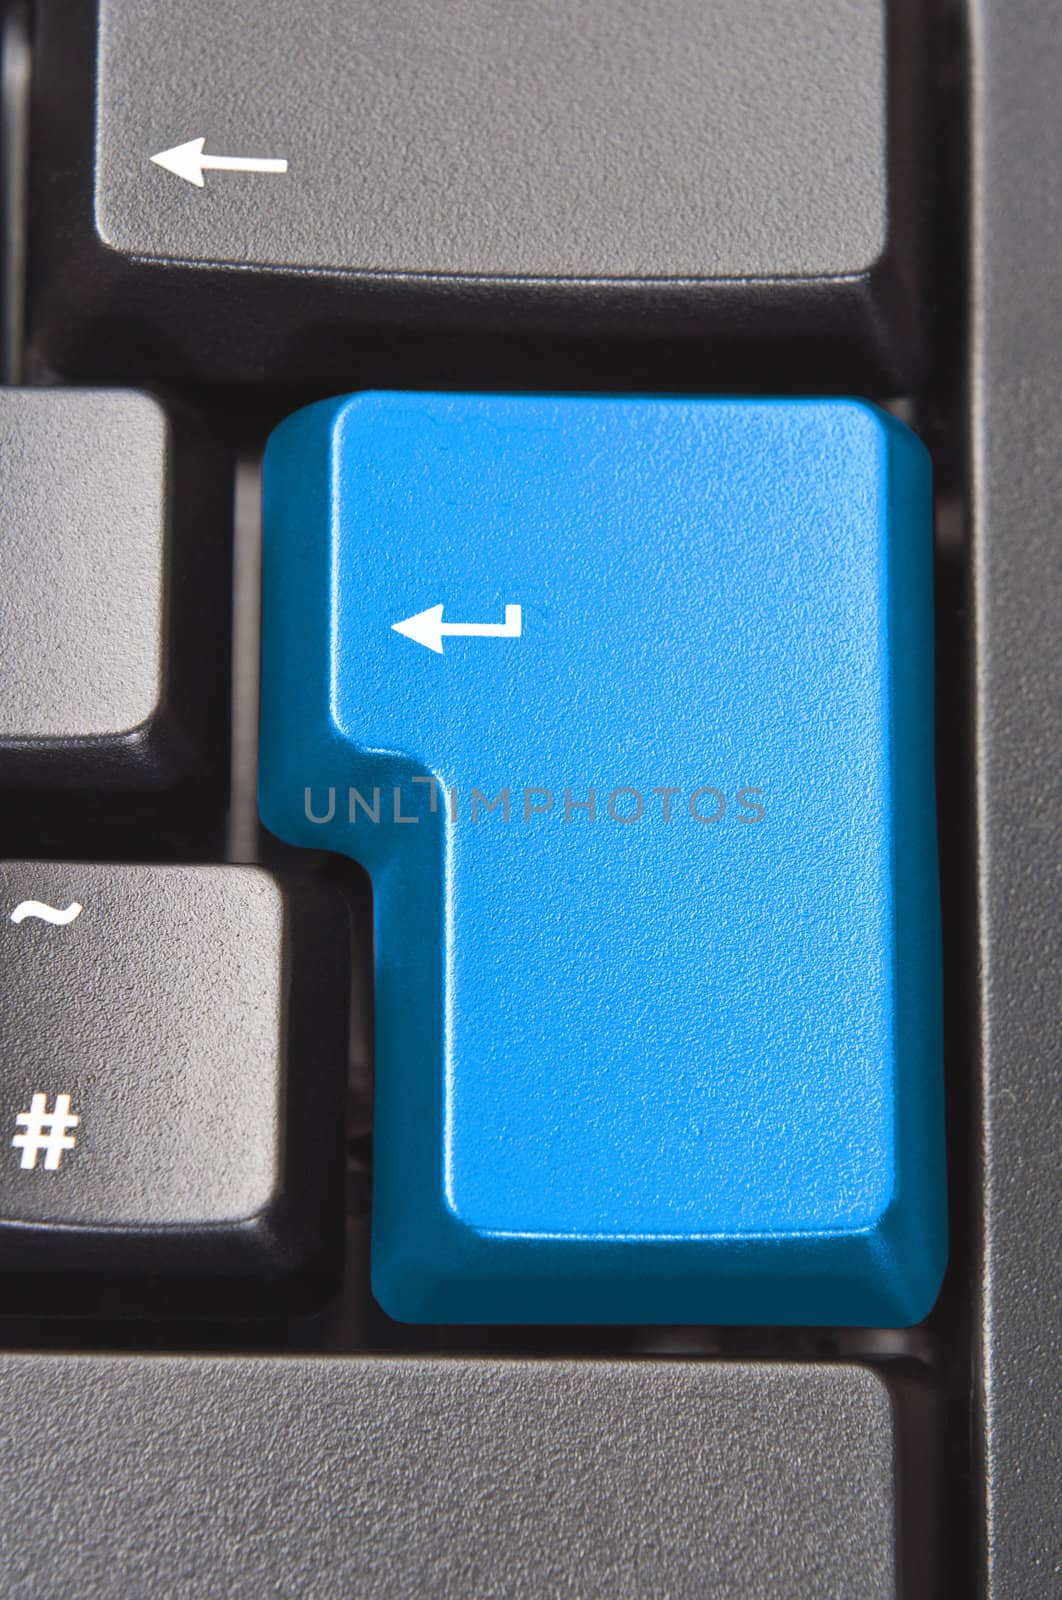 Blue Key on Keyboard by frannyanne